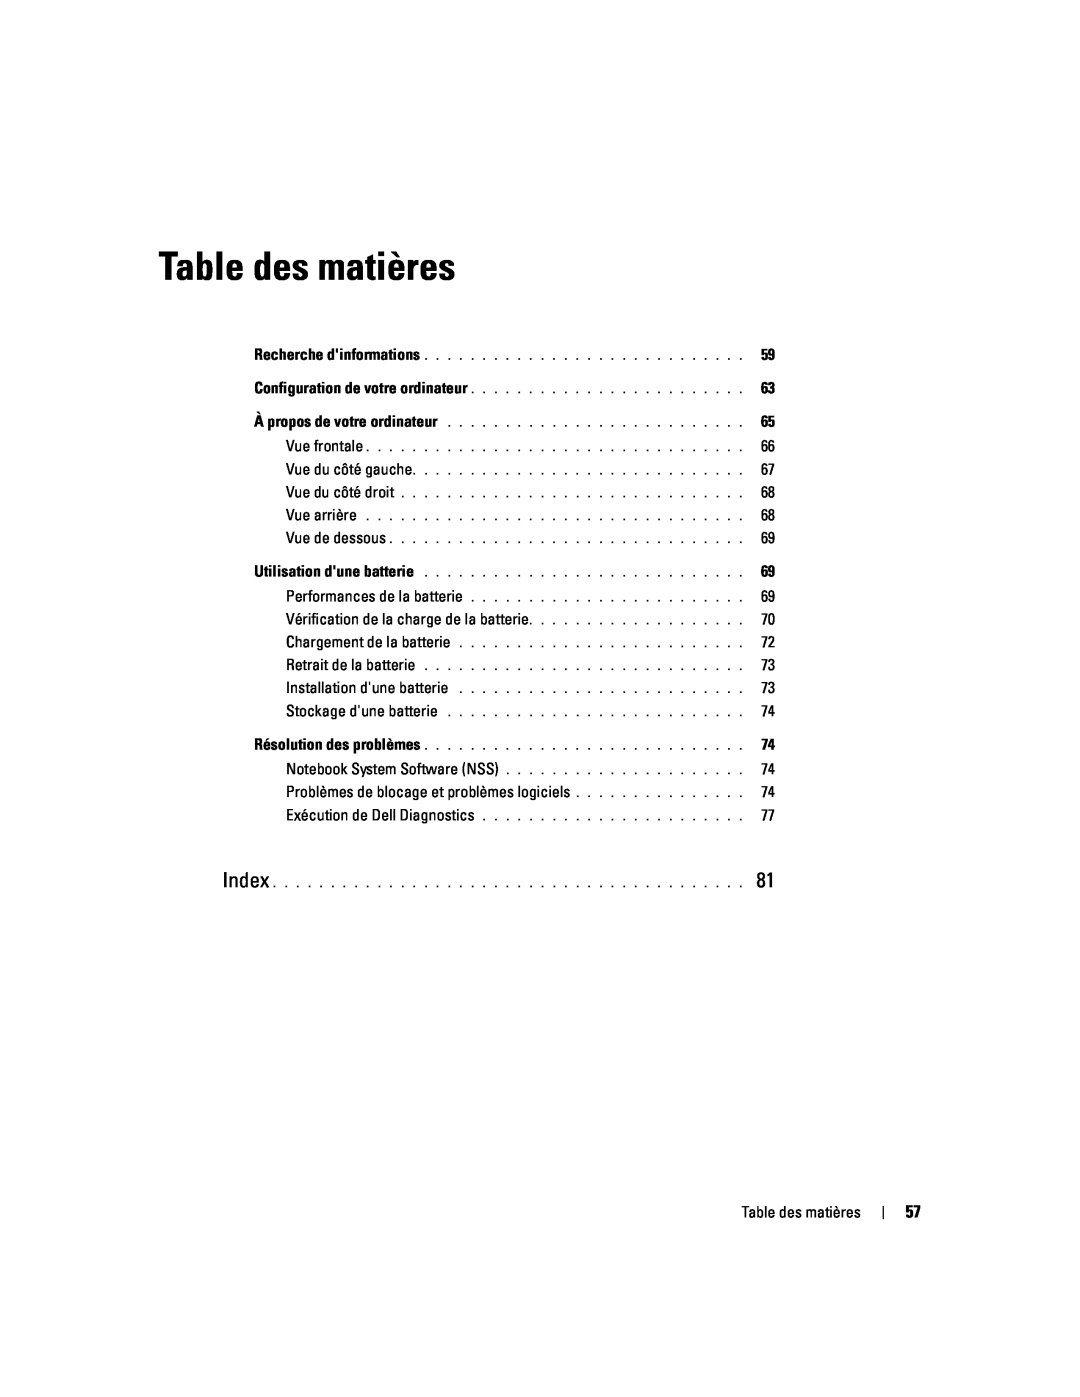 Dell PP06S manual Table des matières, Vérification de la charge de la batterie, Problèmes de blocage et problèmes logiciels 